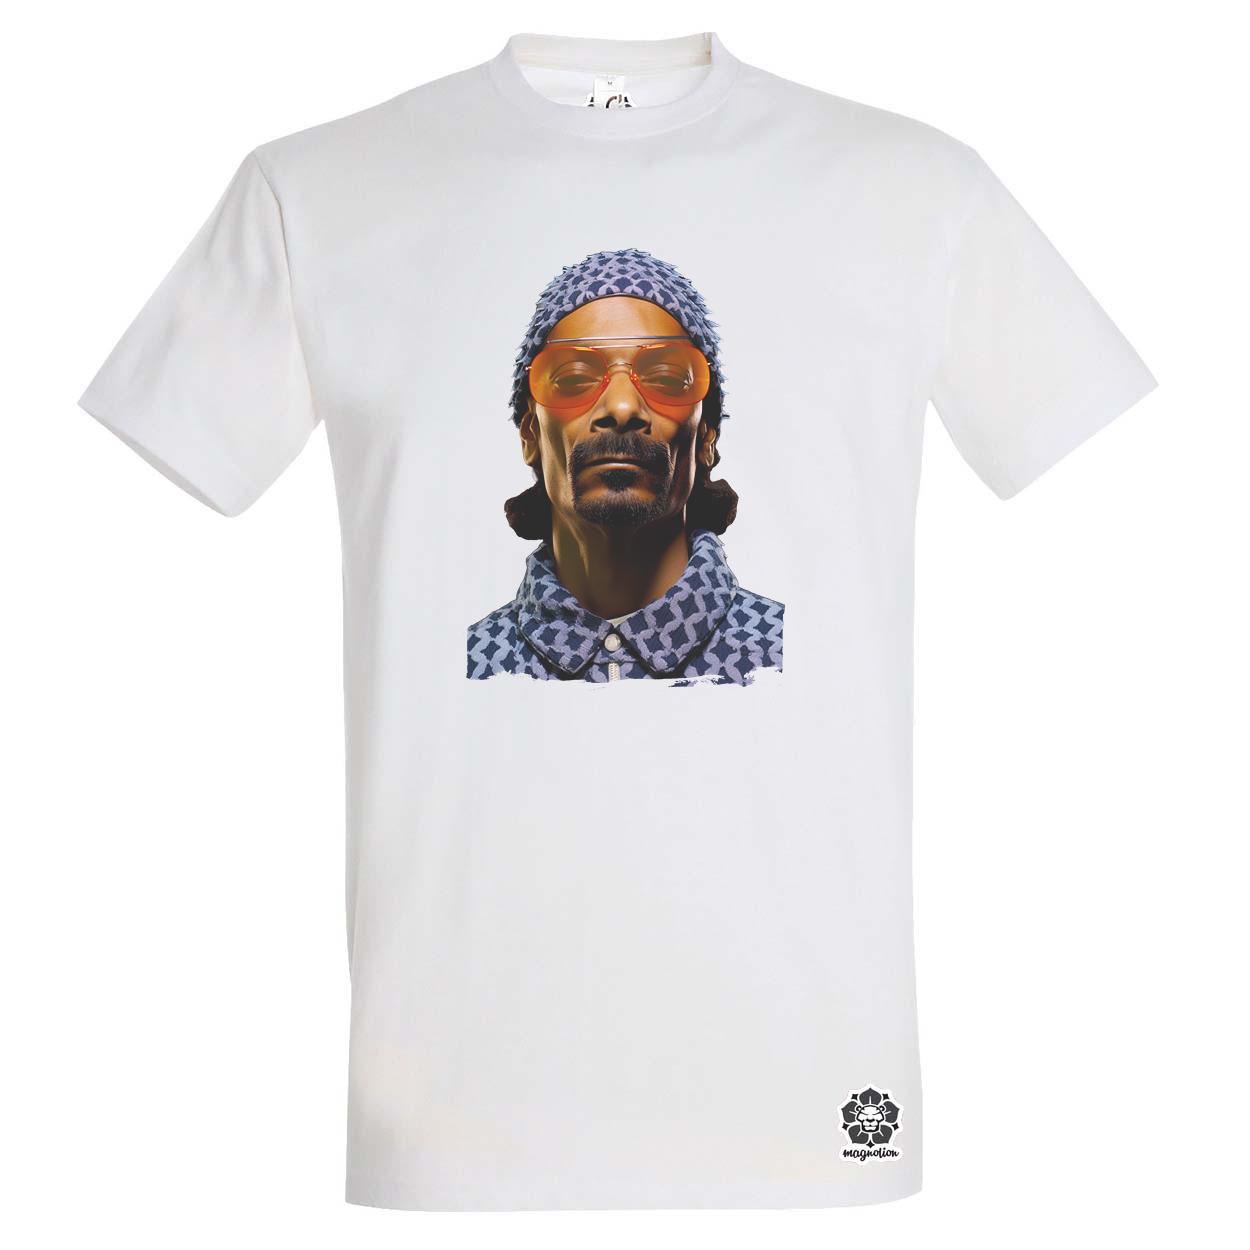 Snoop Dogg v4